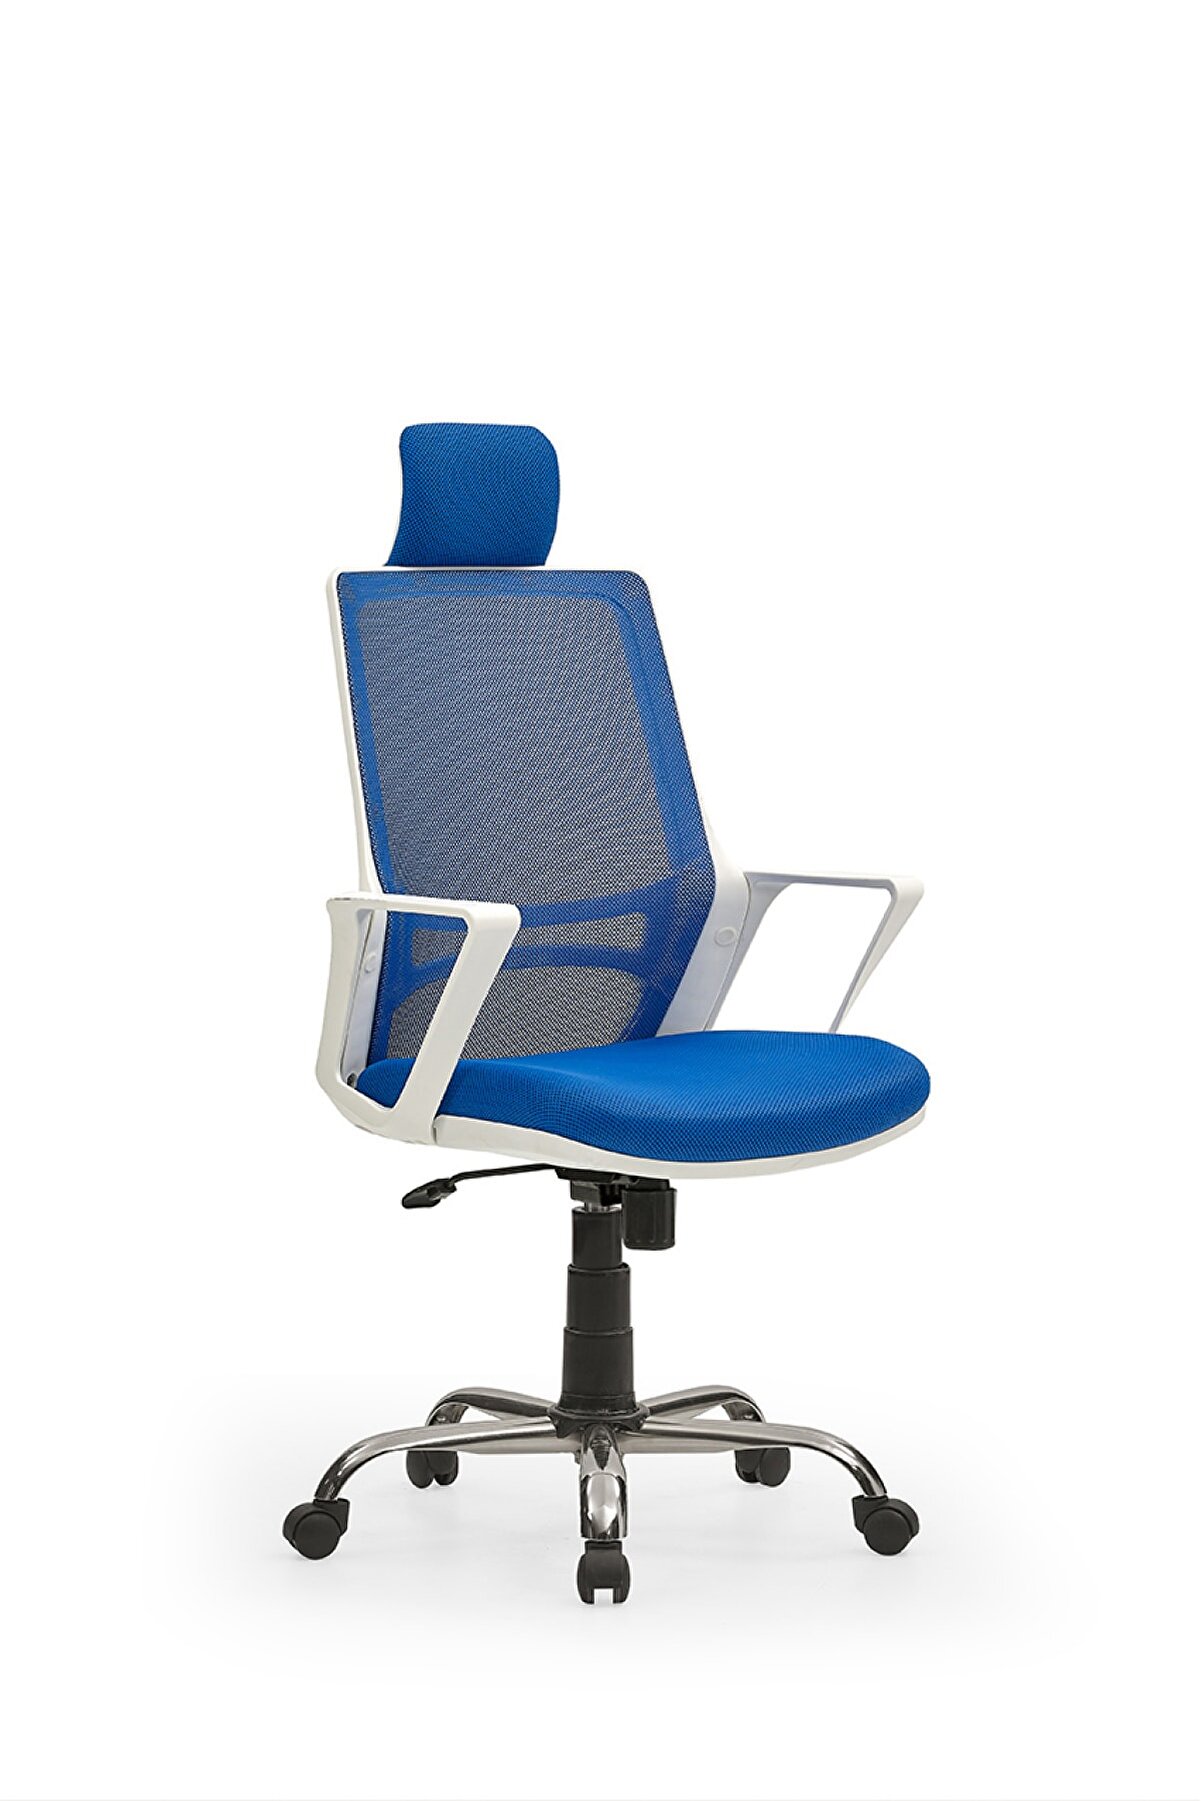 MEHMET YAREN BURO Arya2 Bilgisayar Koltuğu - Ofis - Müdür - Büro - Çalışma Sandalyesi Mavi Beyaz Renk Krom Ayaklı